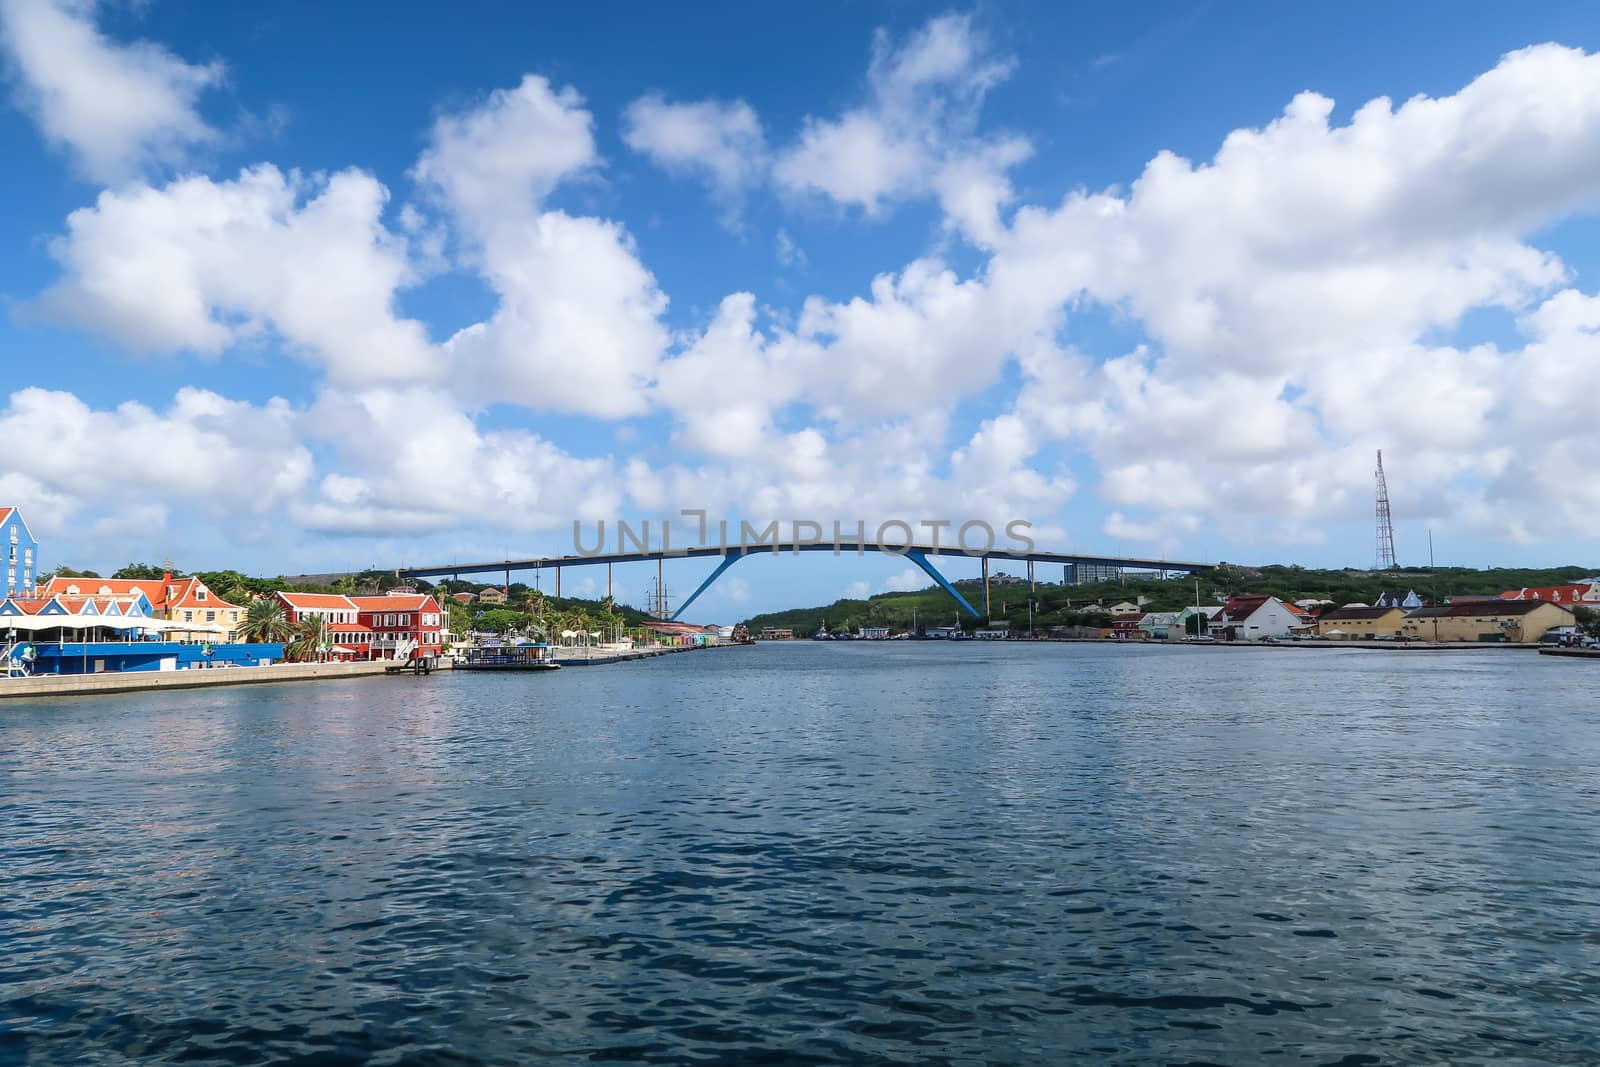 Queen Julia bridge from the pedestrian floating bridge in front of it. Willemstad, Curacao.